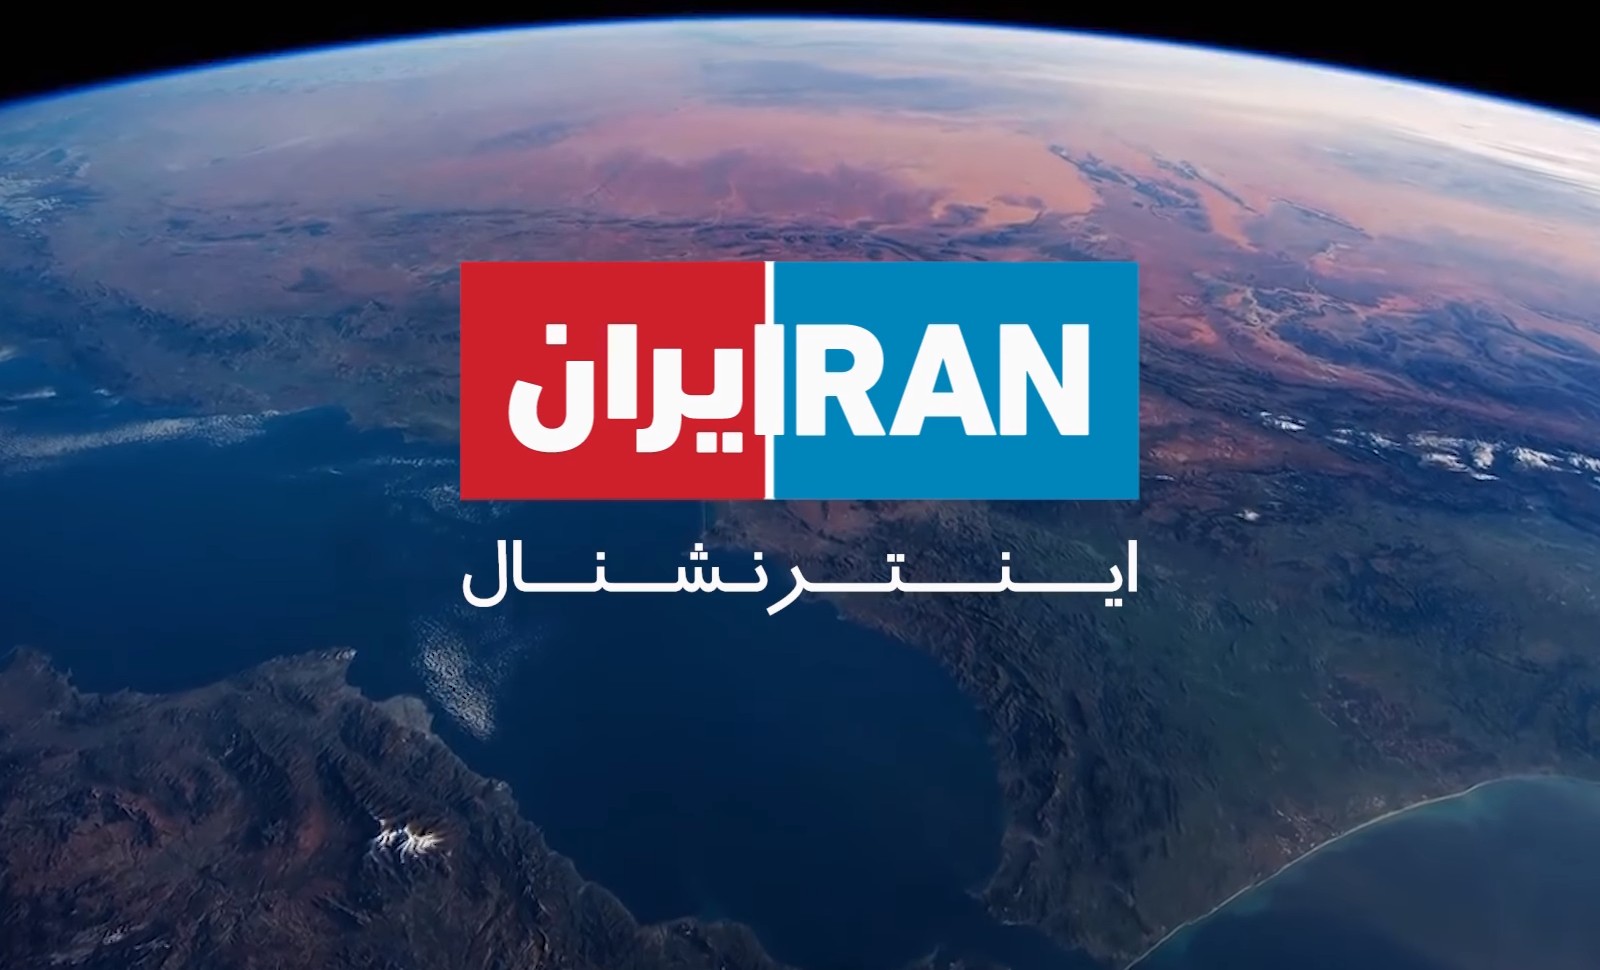 Pour qui roule la chaîne TV Iran International?